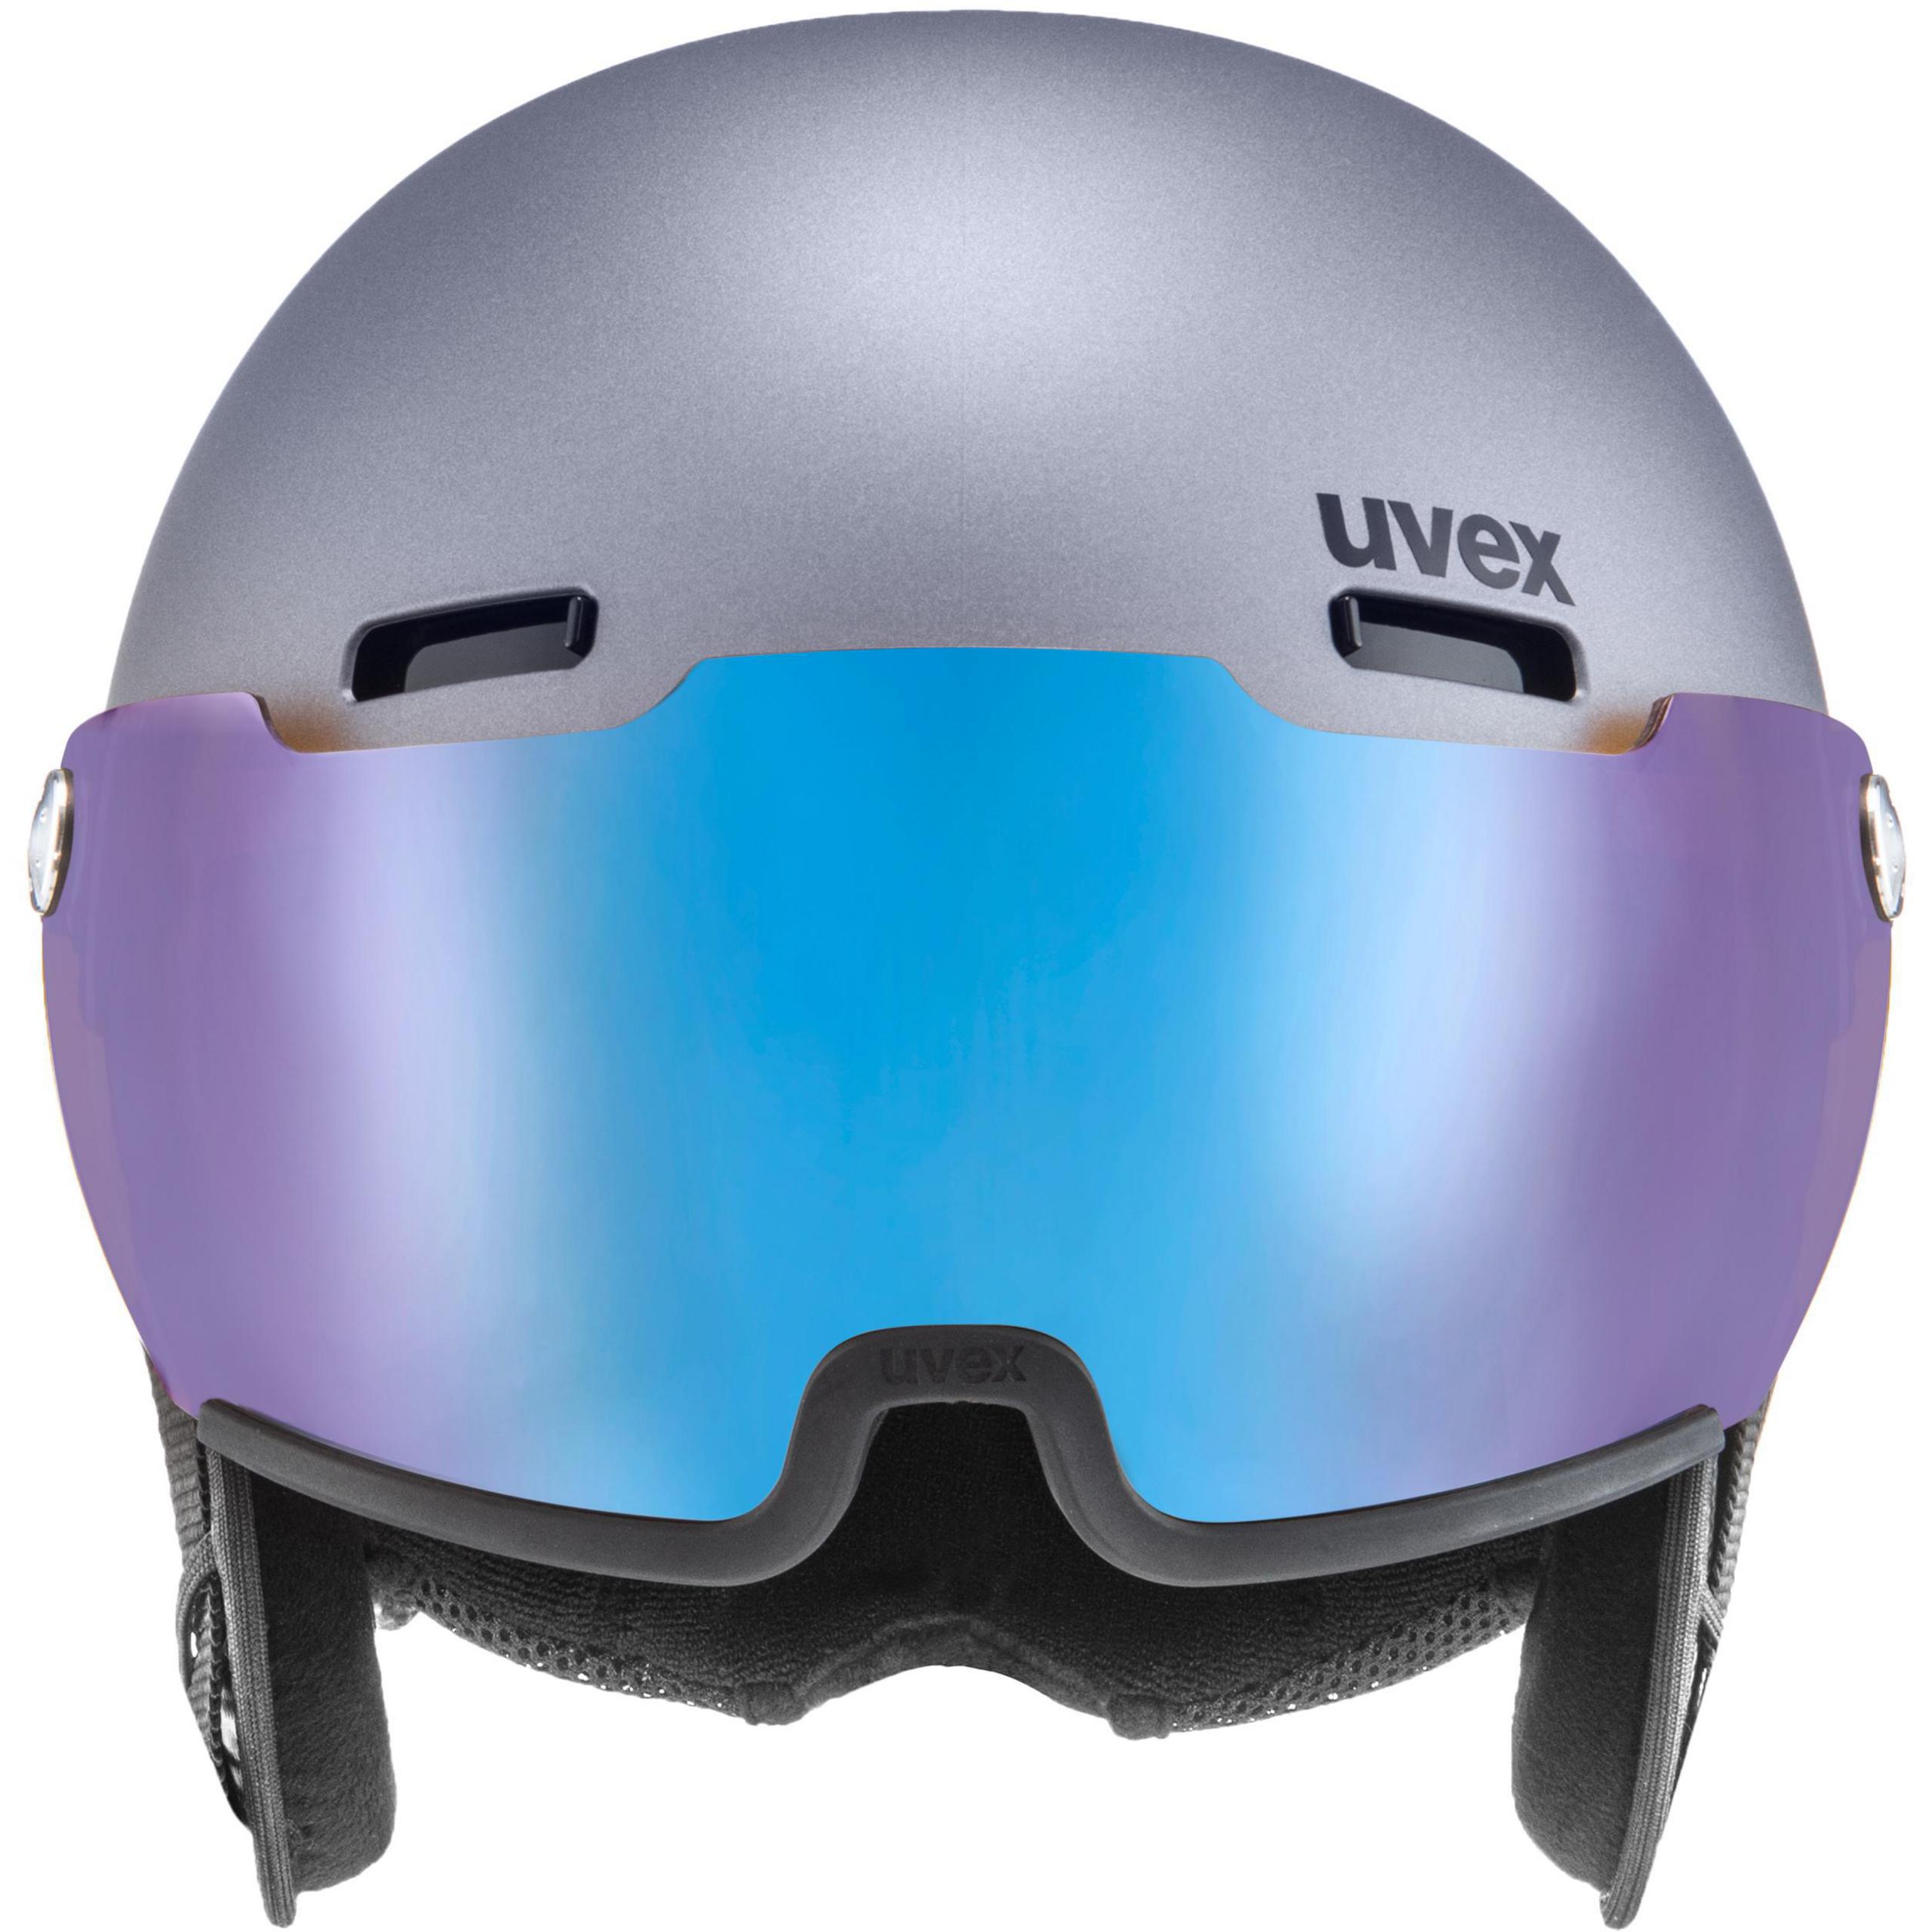 UVEX esquí hlmt 500 visor V unisex adultos casco con visera 